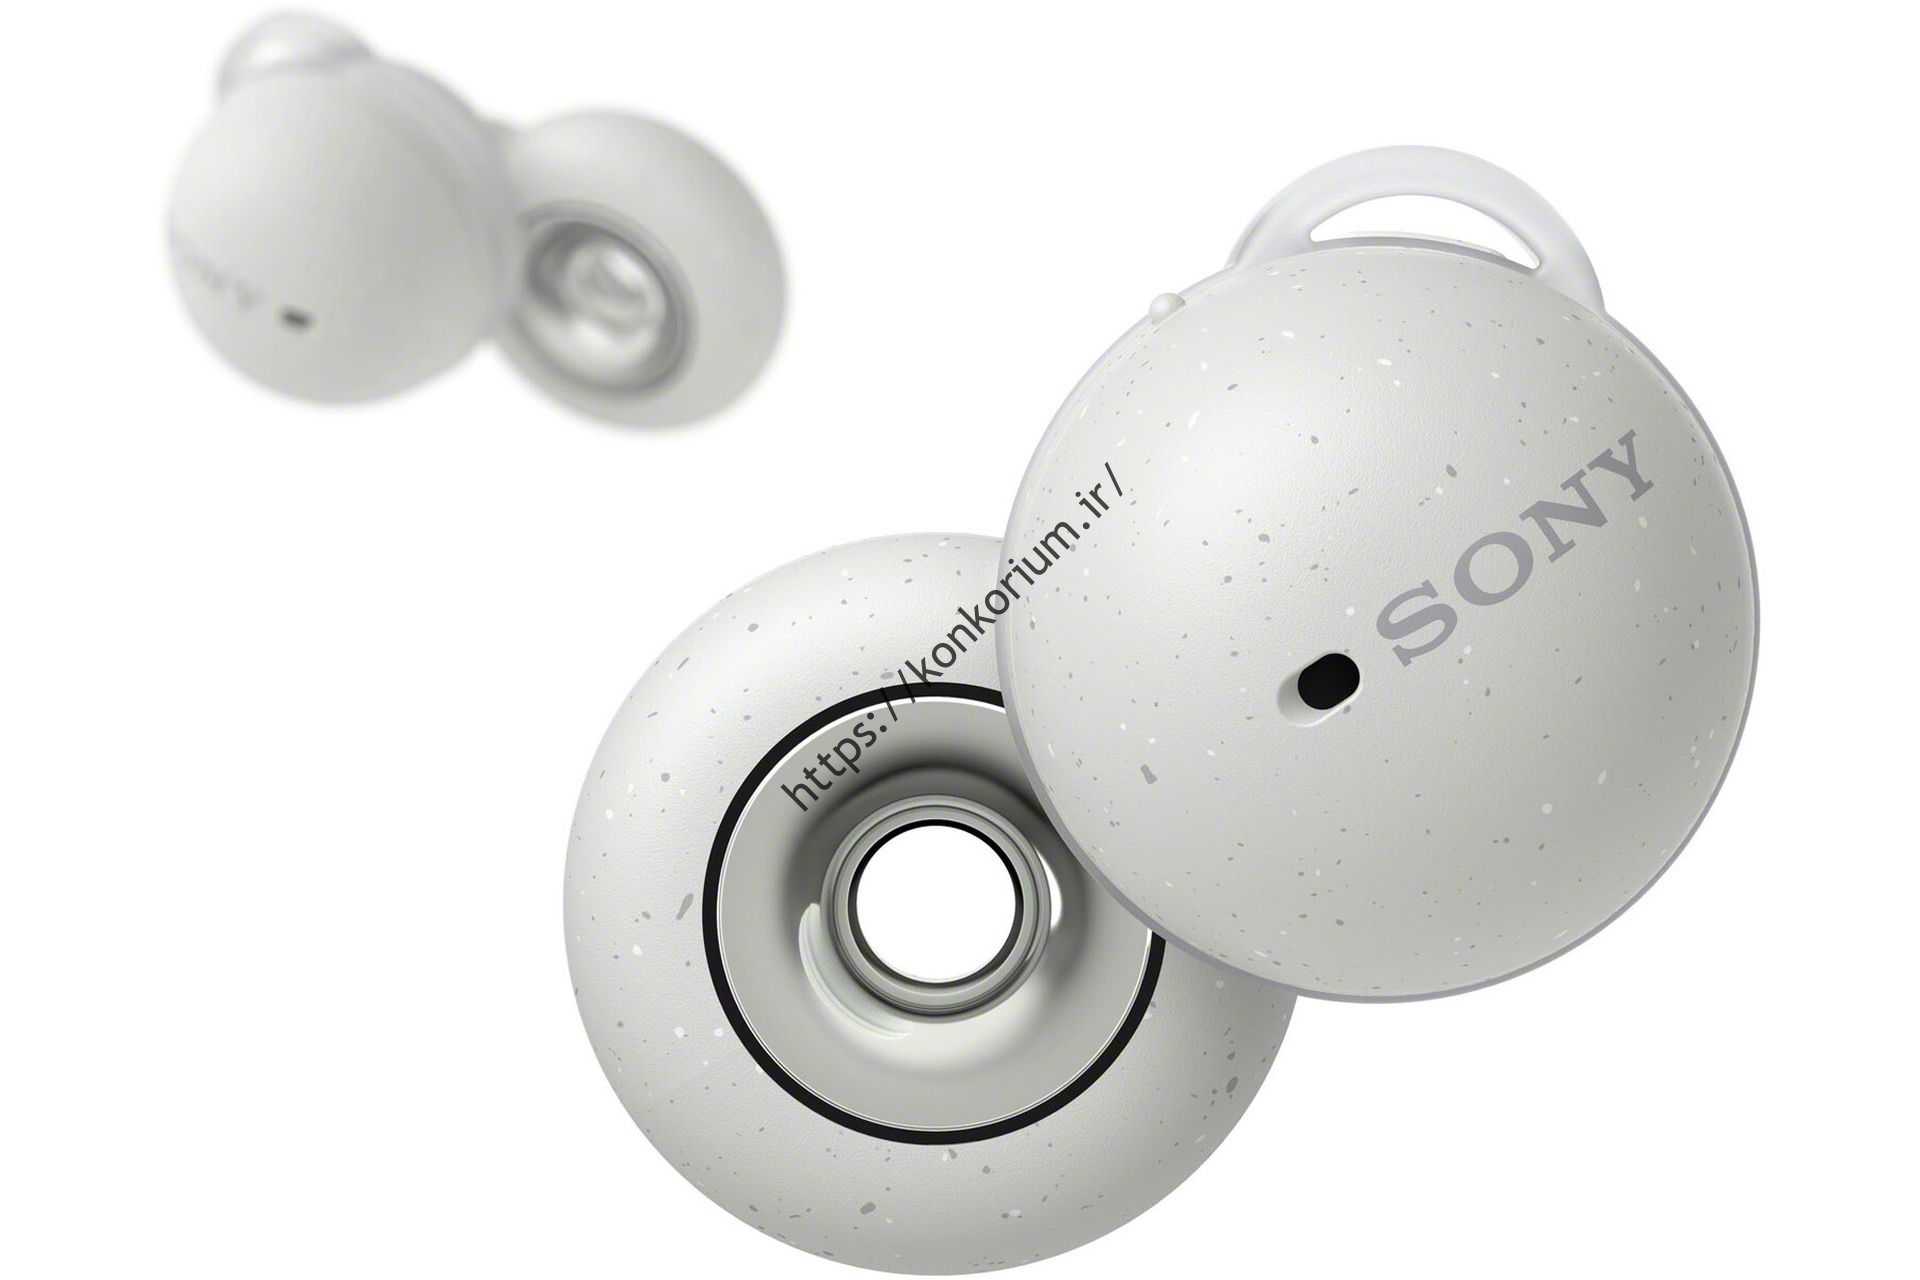 هدفون سفید Sony Linkbuds WF-L900 با نمای جلوی سفید